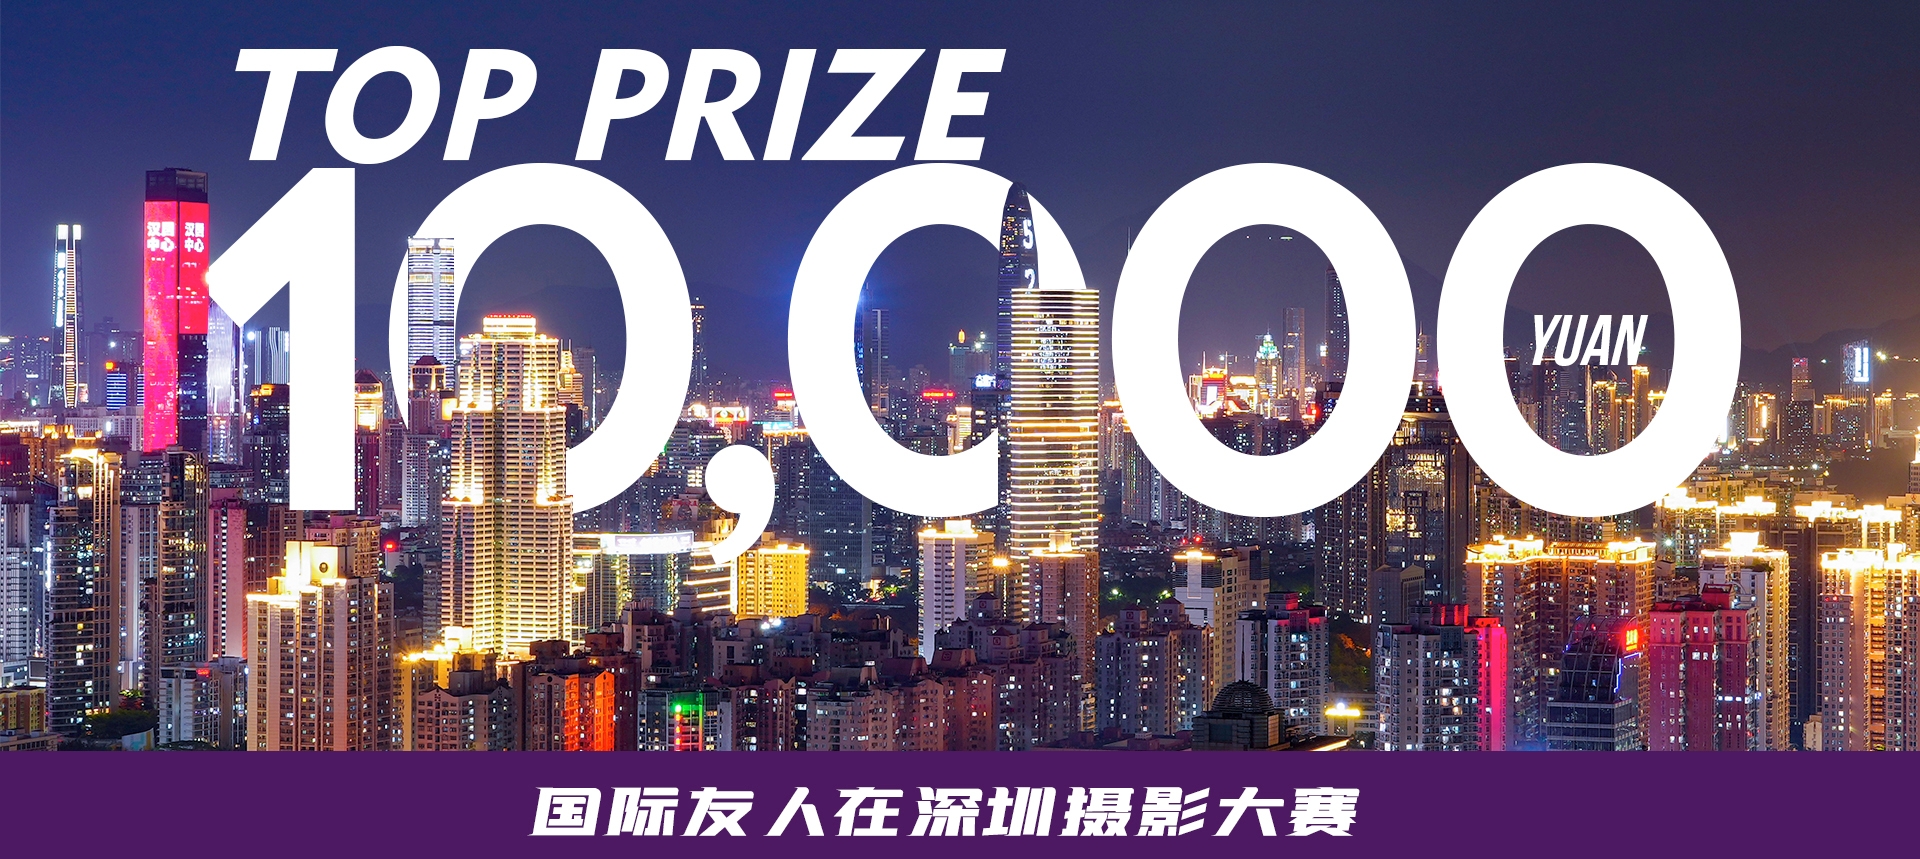 Inscreva-se no concurso de fotos de expatriados para ganhar ¥10.000